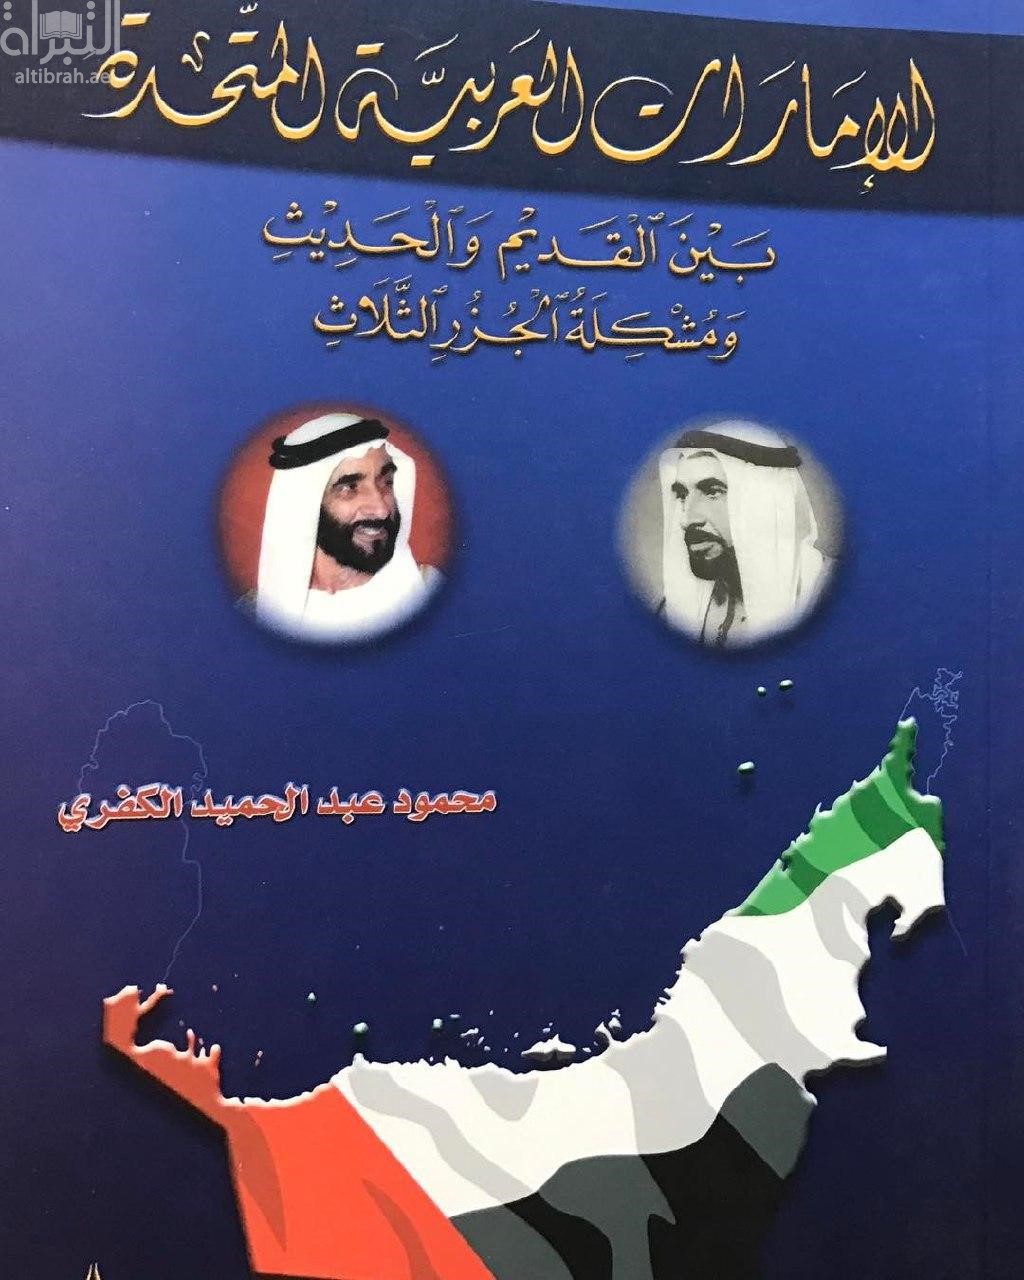 الإمارات العربية المتحدة بين القديم و الحديث و مشكلة الجزر الثلاث : دراسة اجتماعية ، سياسية ، اقتصادية ، تربوية